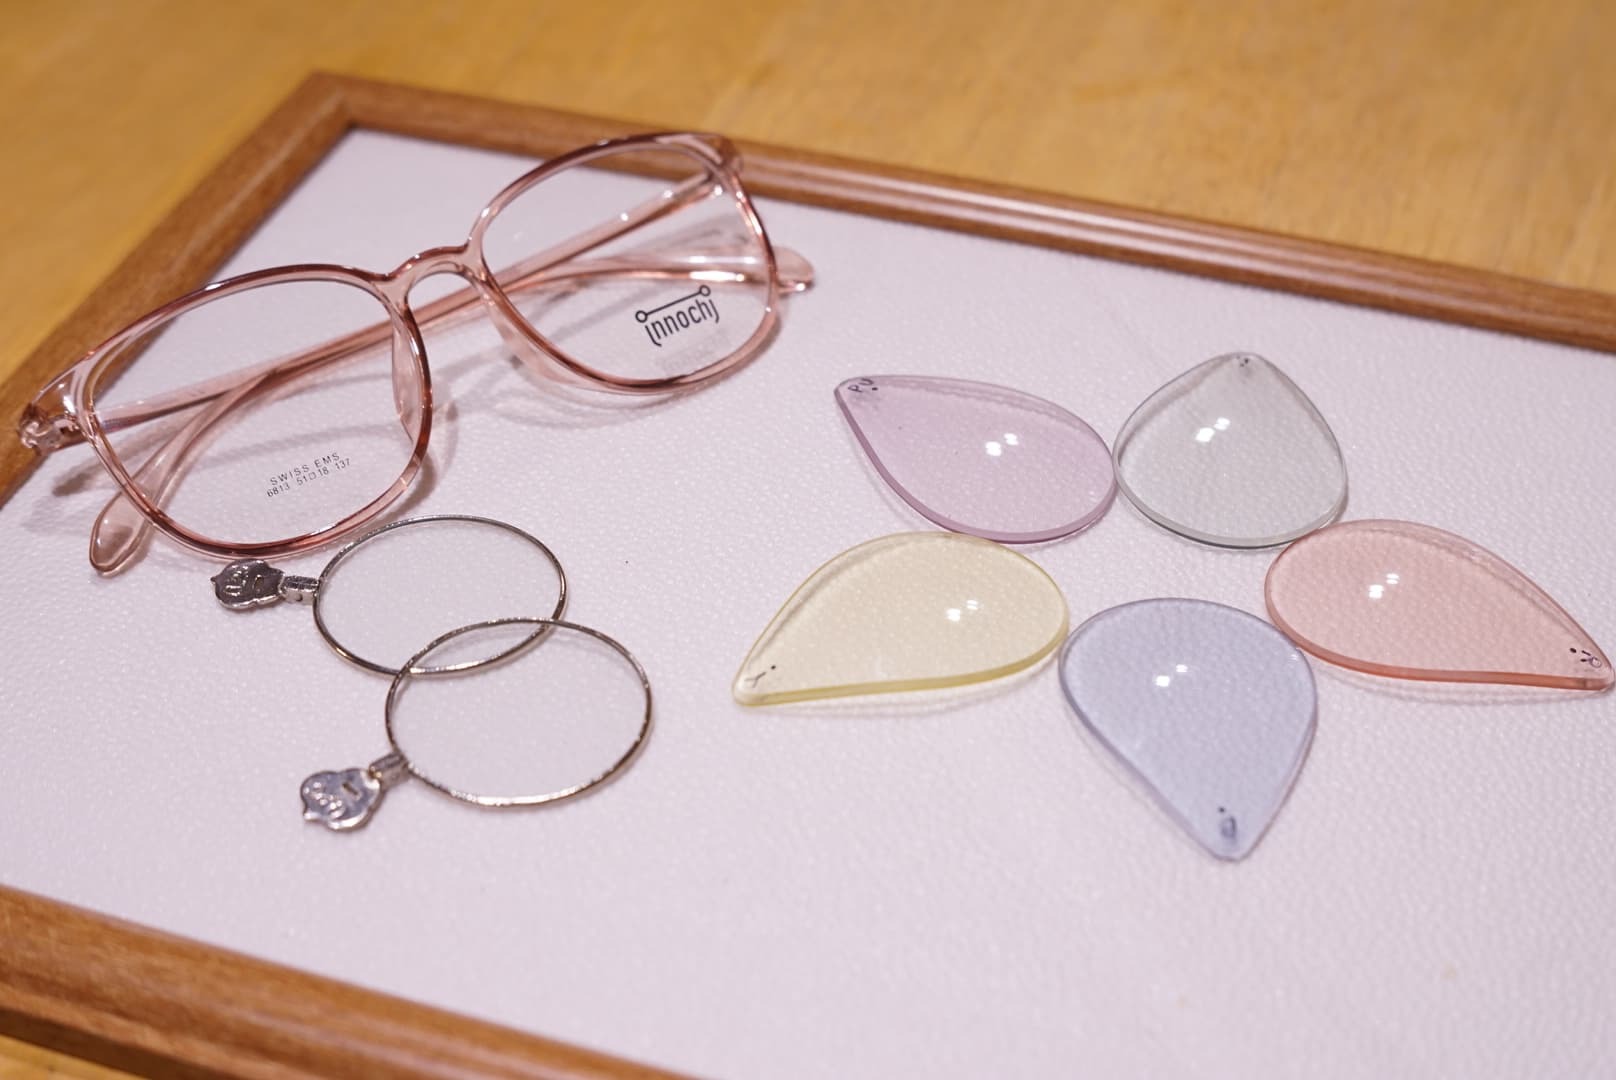 イノチグラスを提供する And More が阿佐ヶ谷にリモートワーク専用メガネ 出張店舗を2月オープン And Moreのプレスリリース